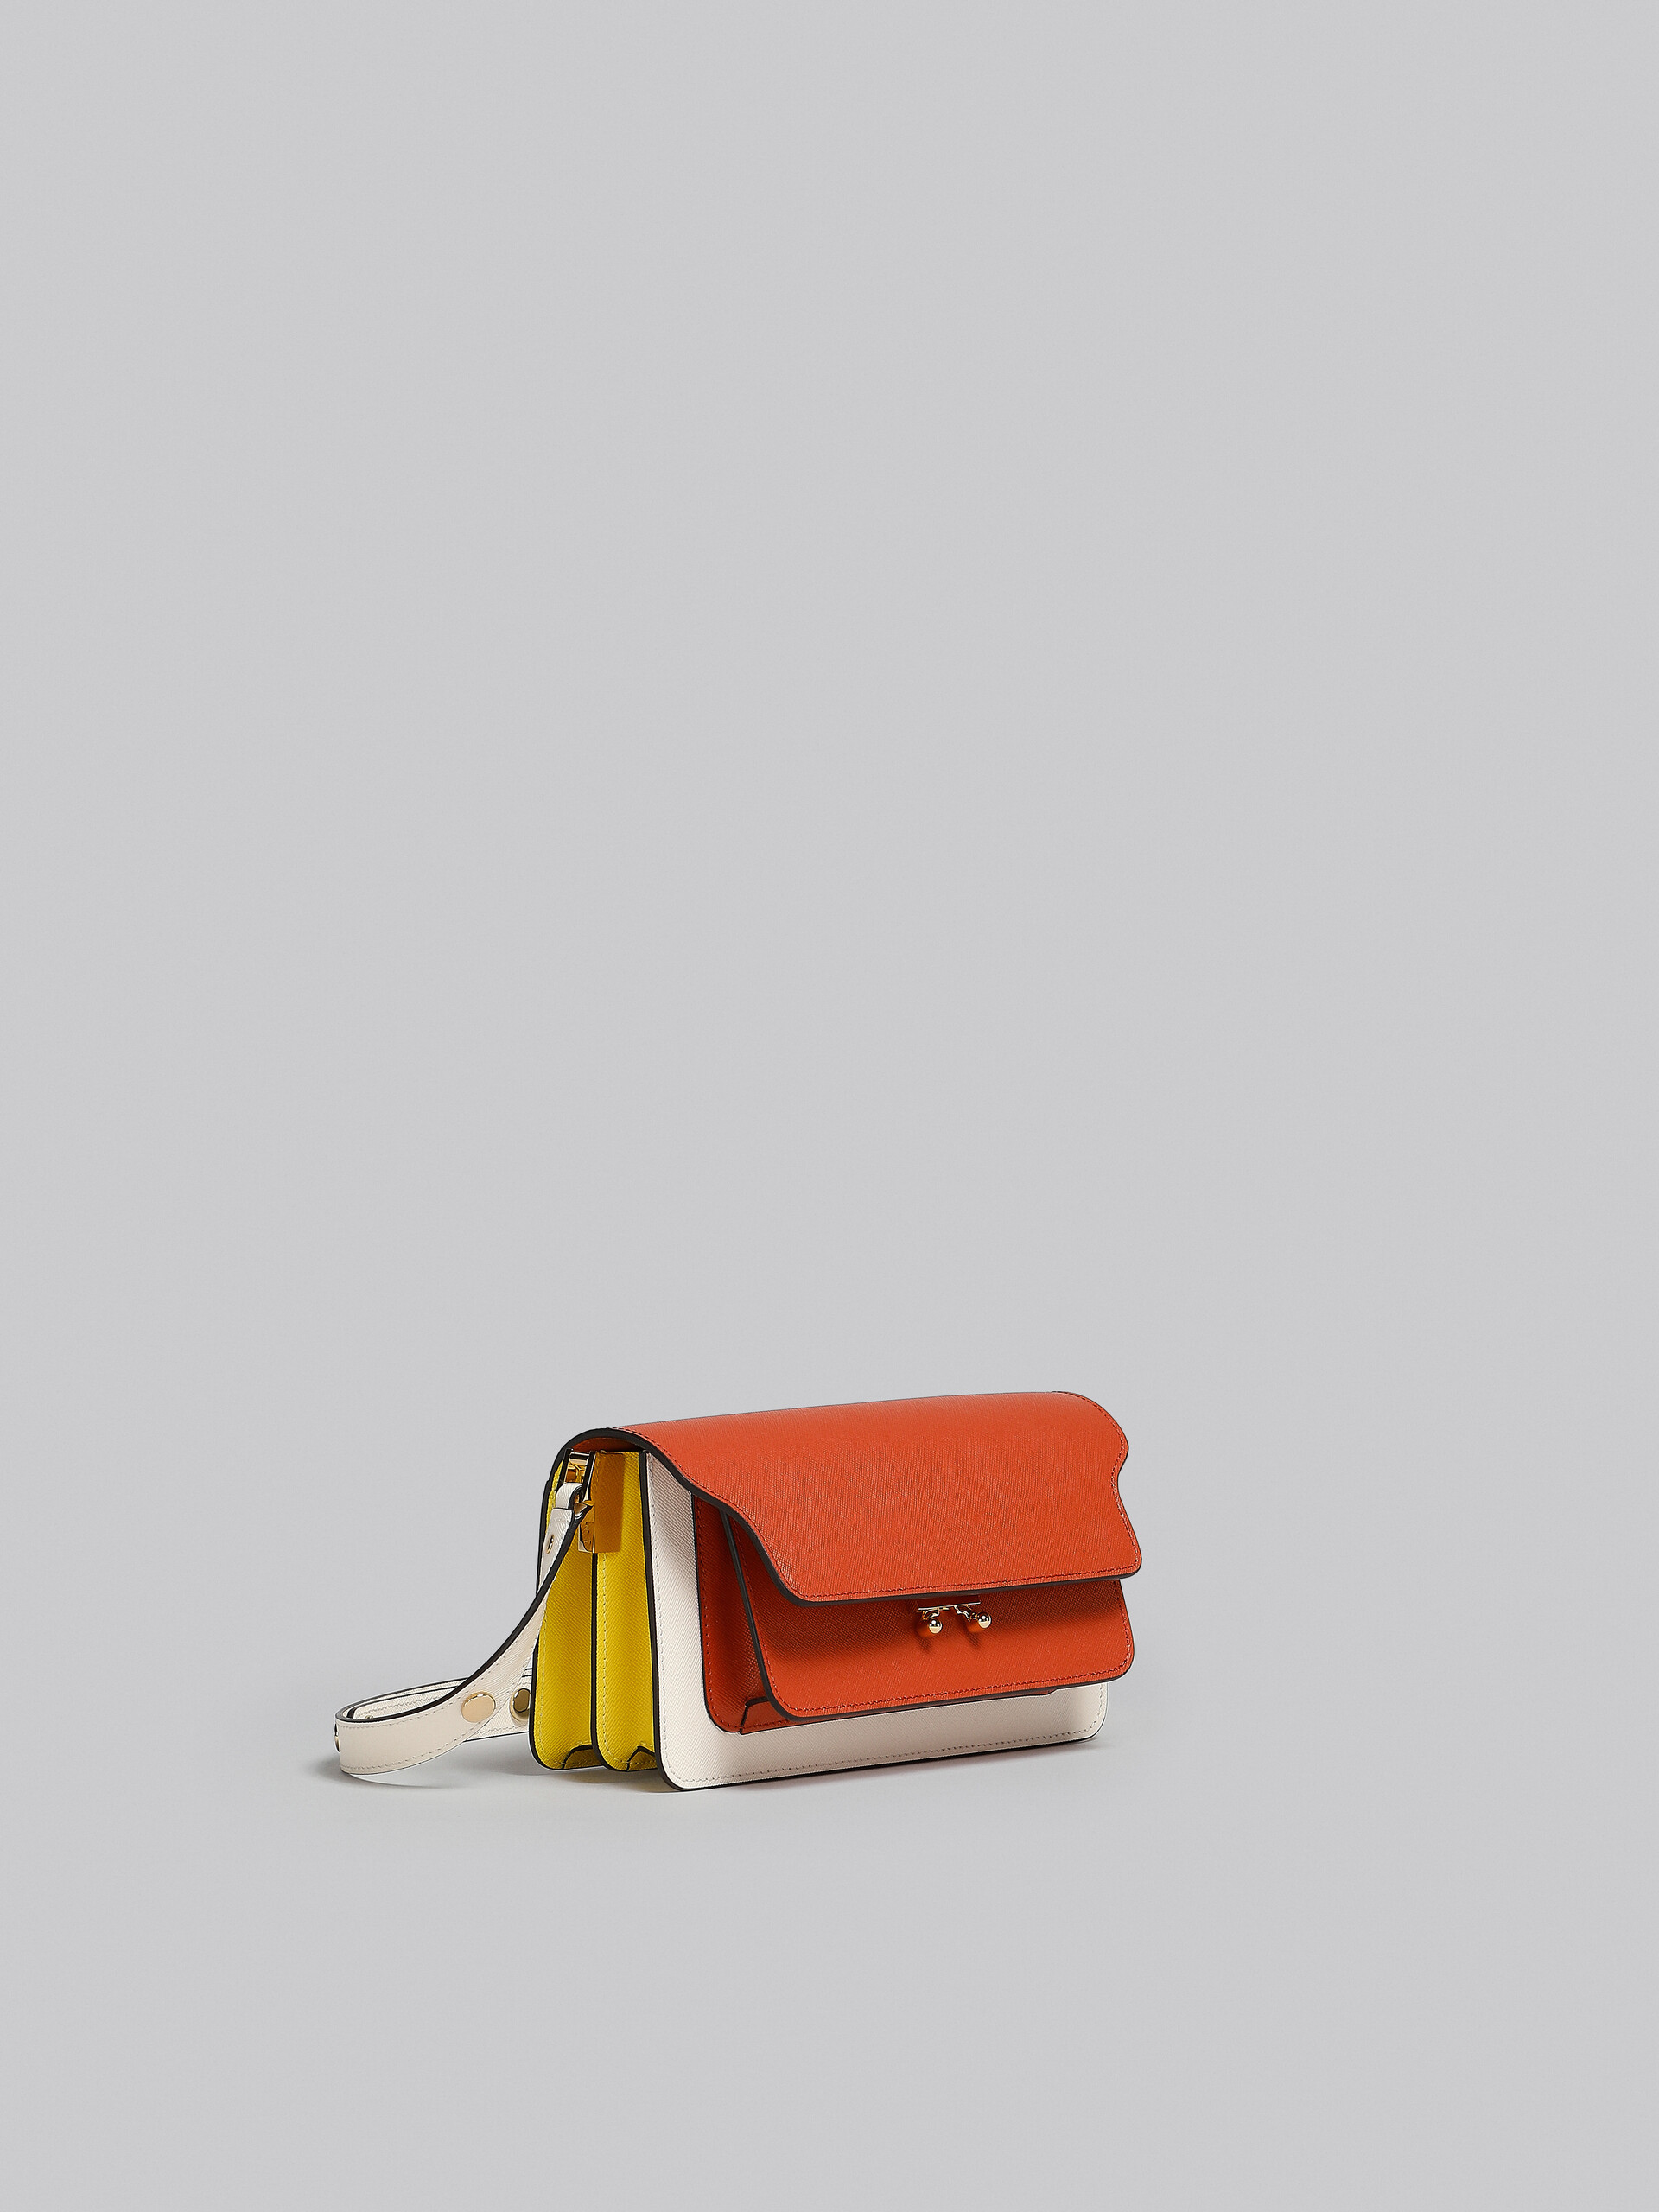 Trunk Bag E/W in pelle saffiano marrone - Borse a spalla - Image 6